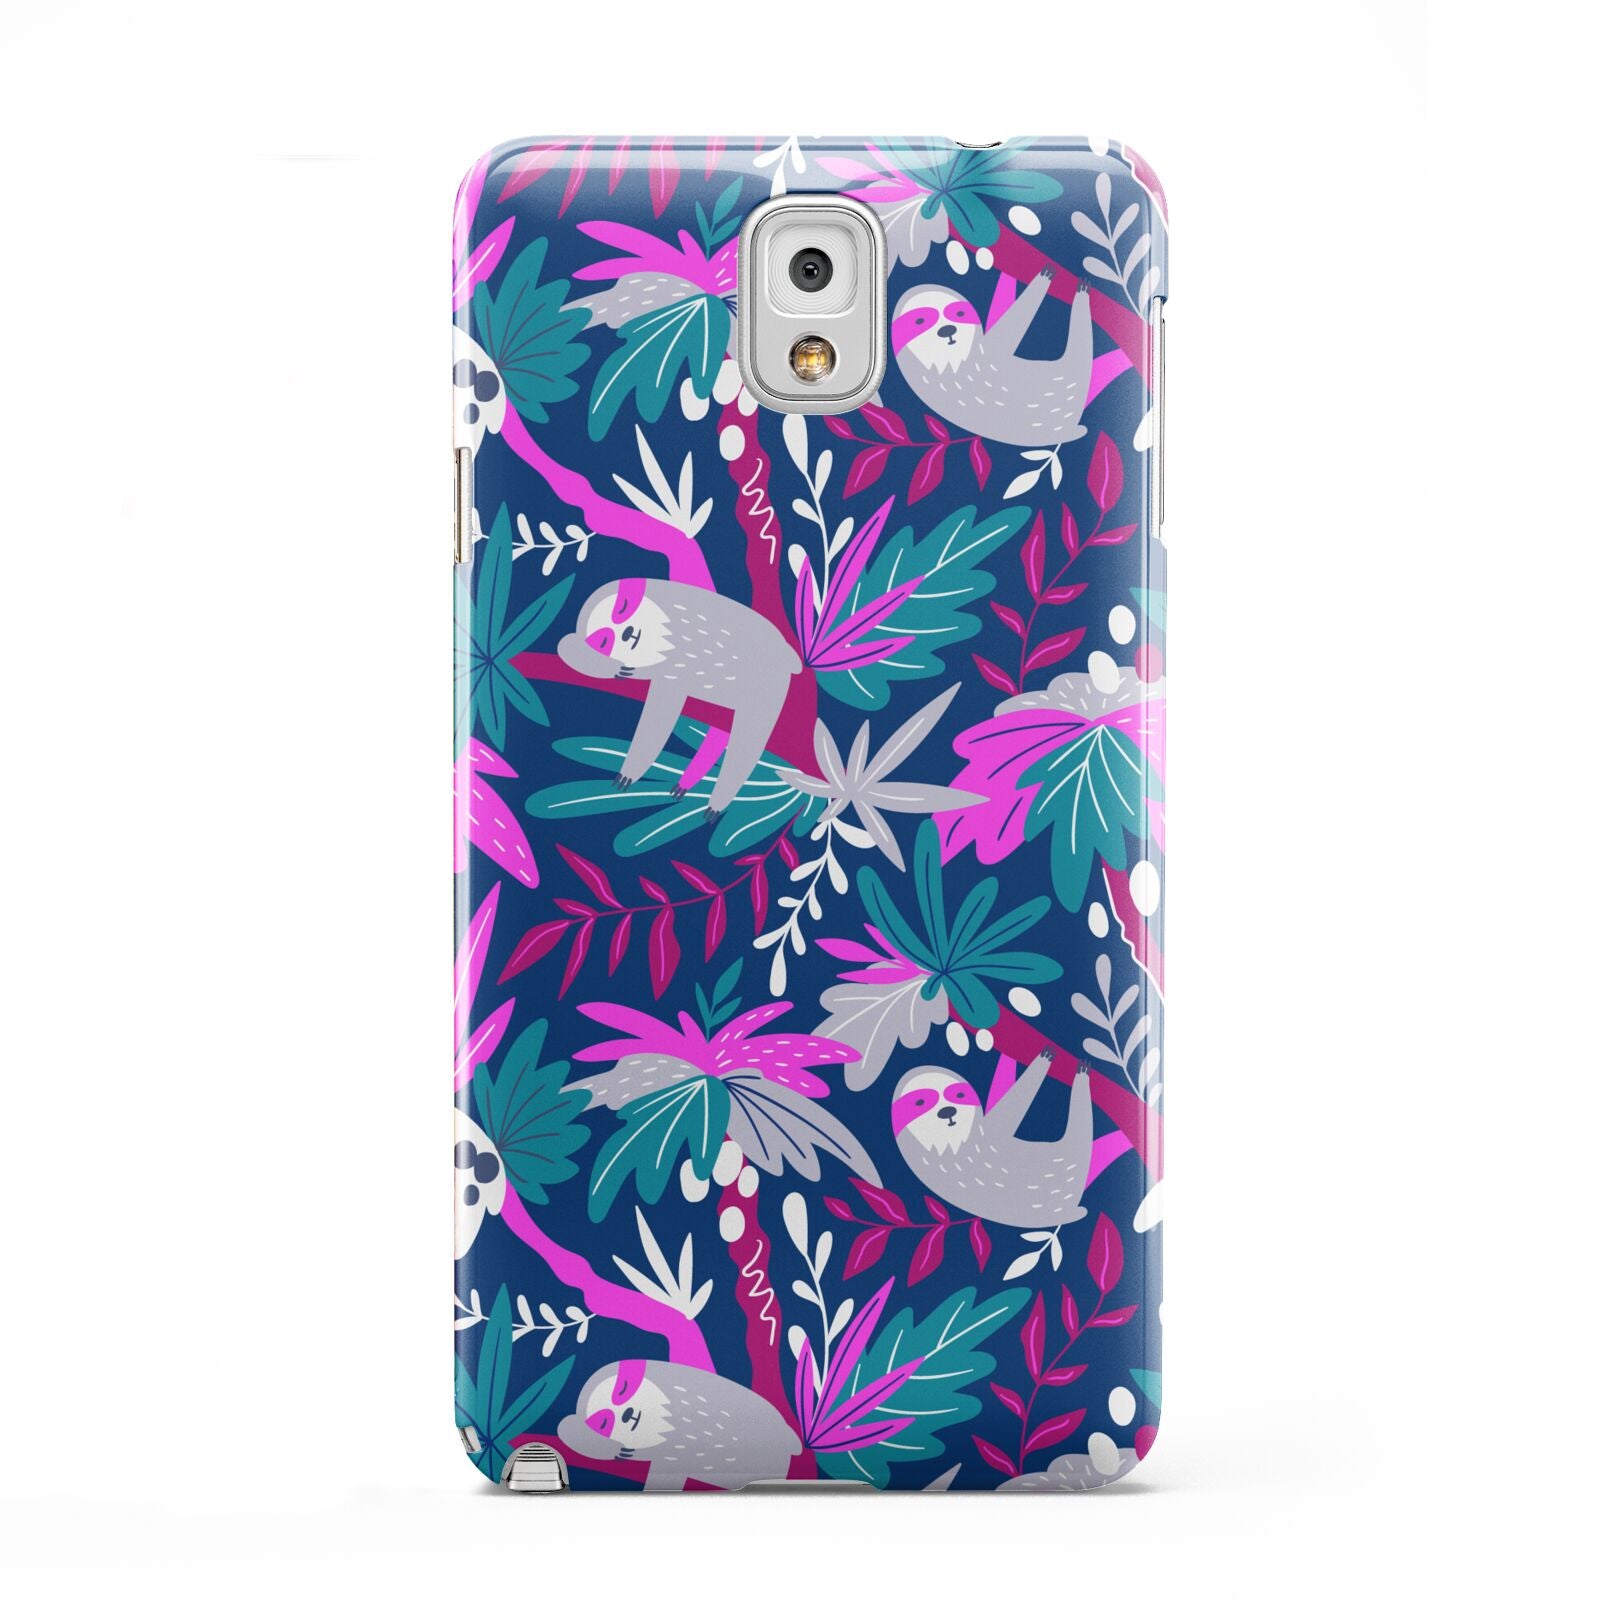 Sloth Samsung Galaxy Note 3 Case